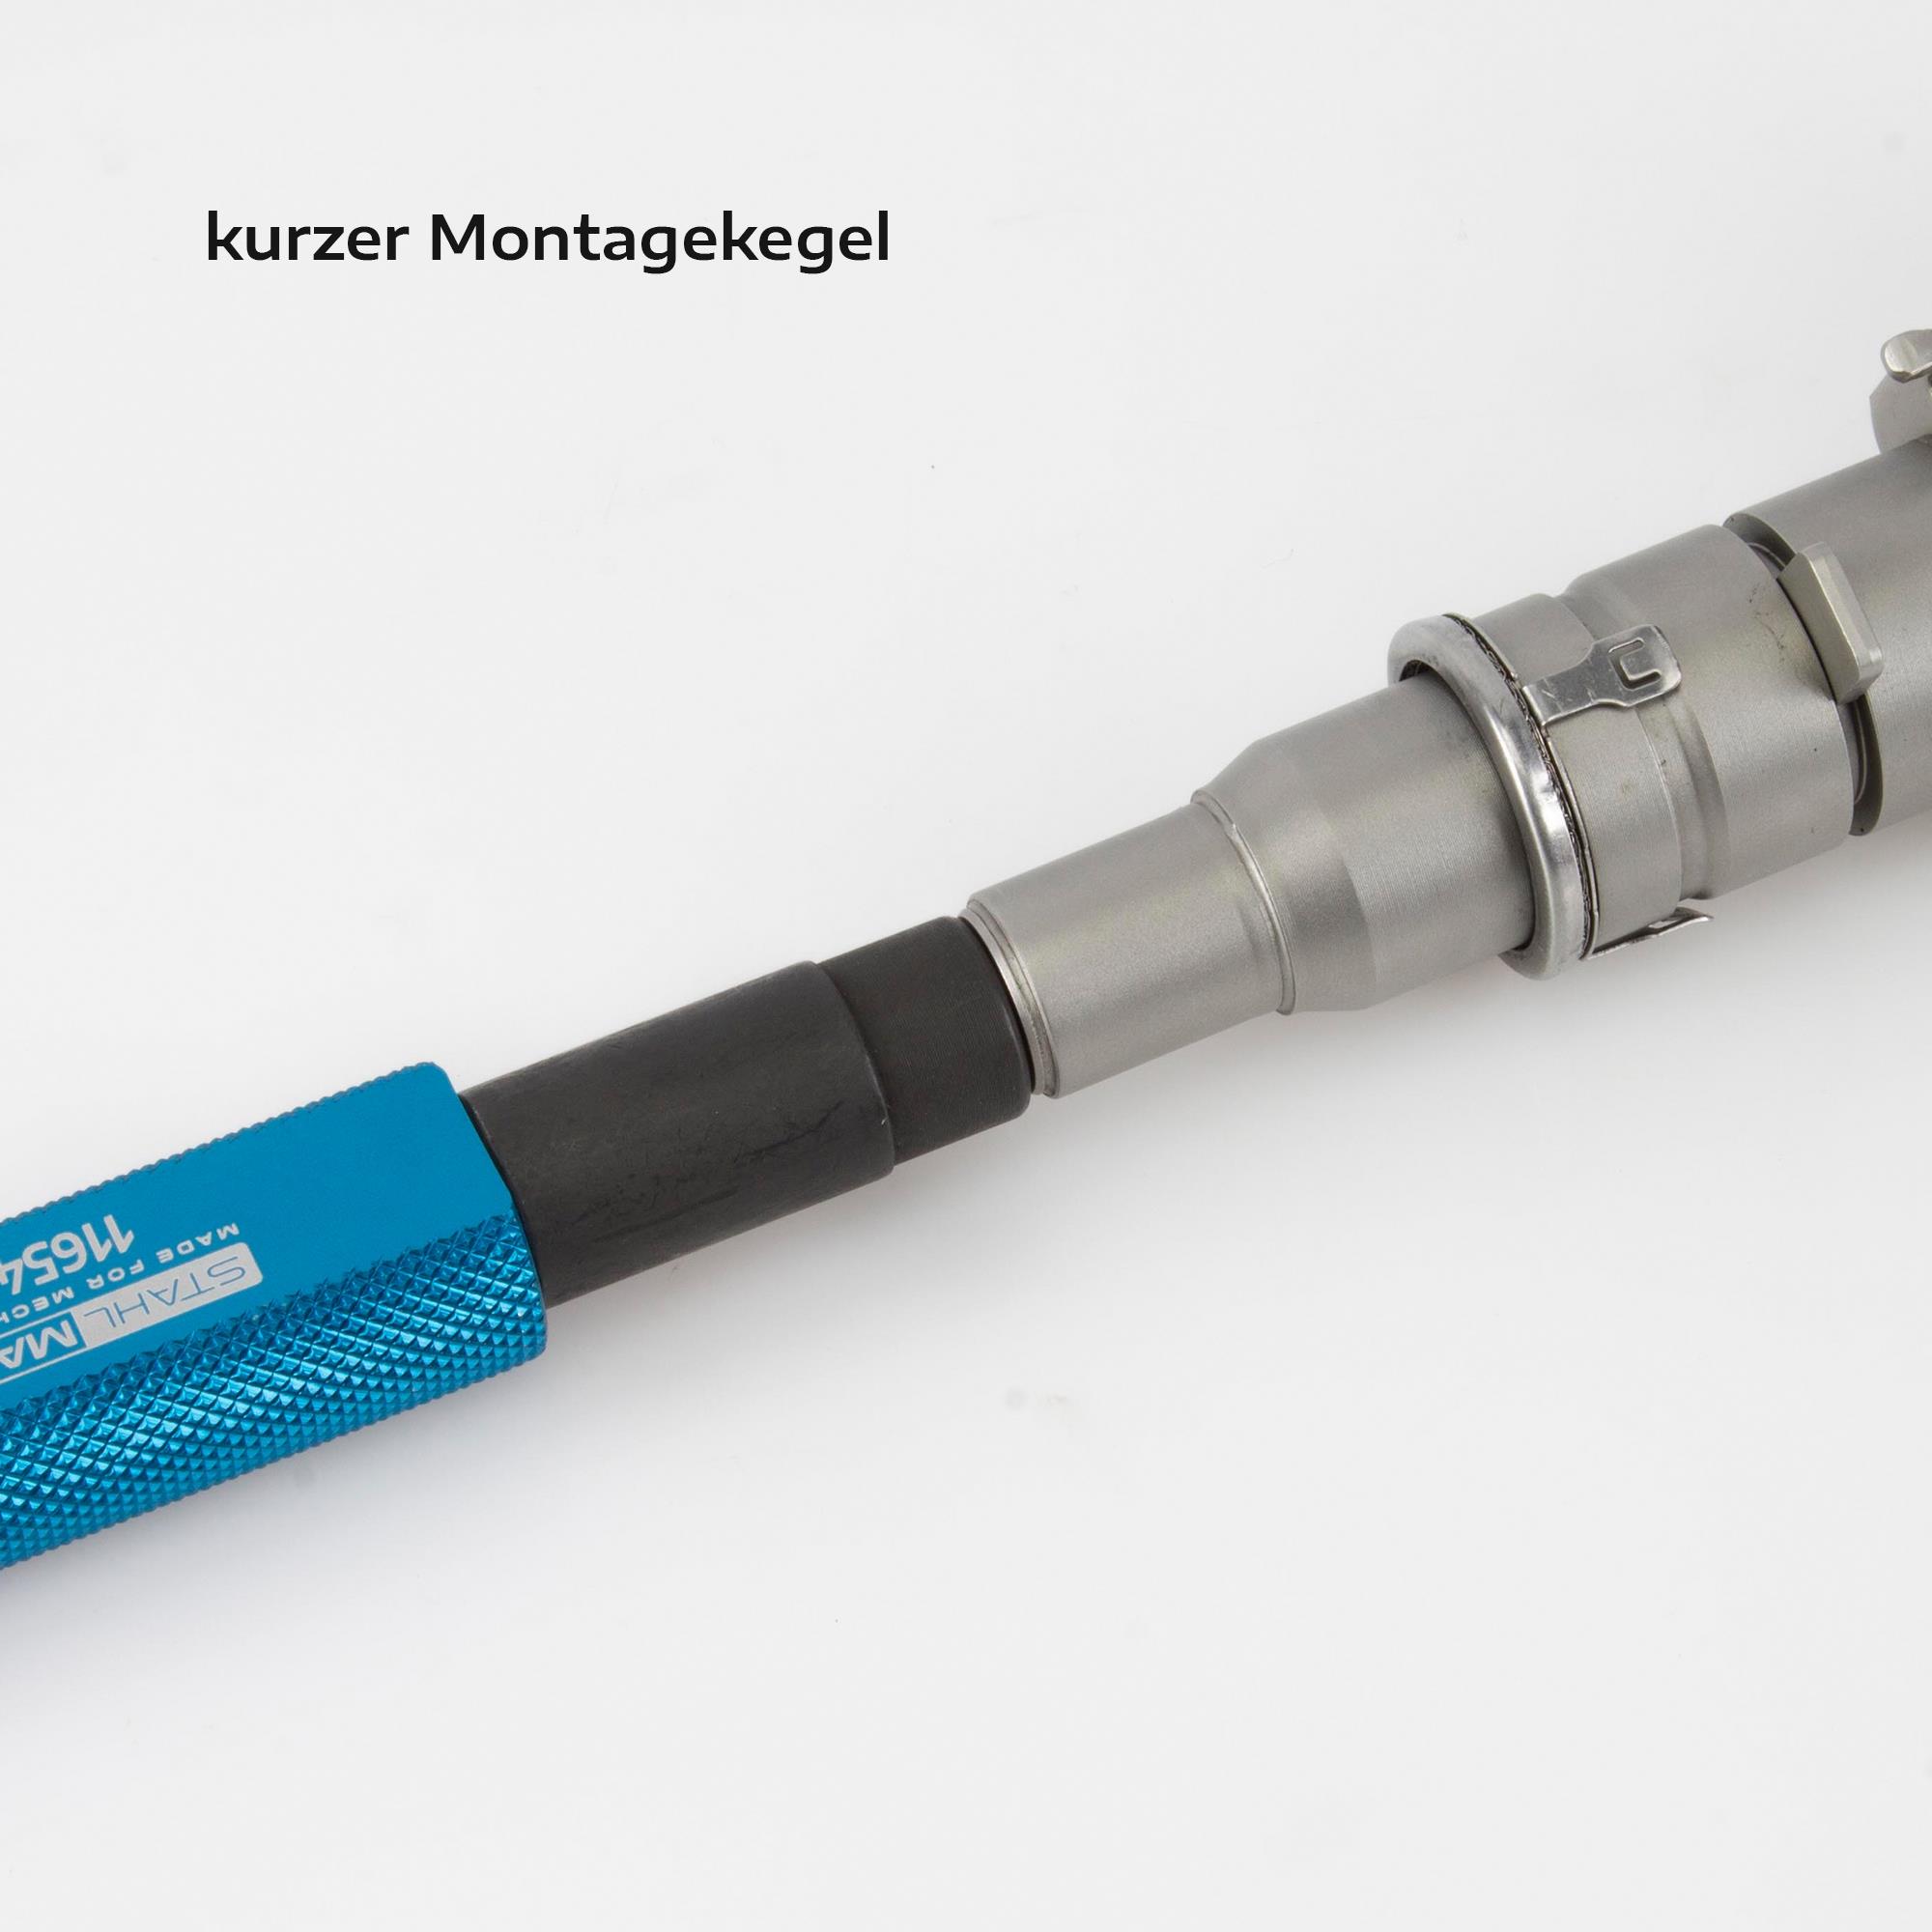 Injektor-Dichtring De- und Montage Werkzeug, für Gen. 1+2 BMW Einspritzdüsen, Kraftstoff / Einspritzung, Spezialwerkzeug